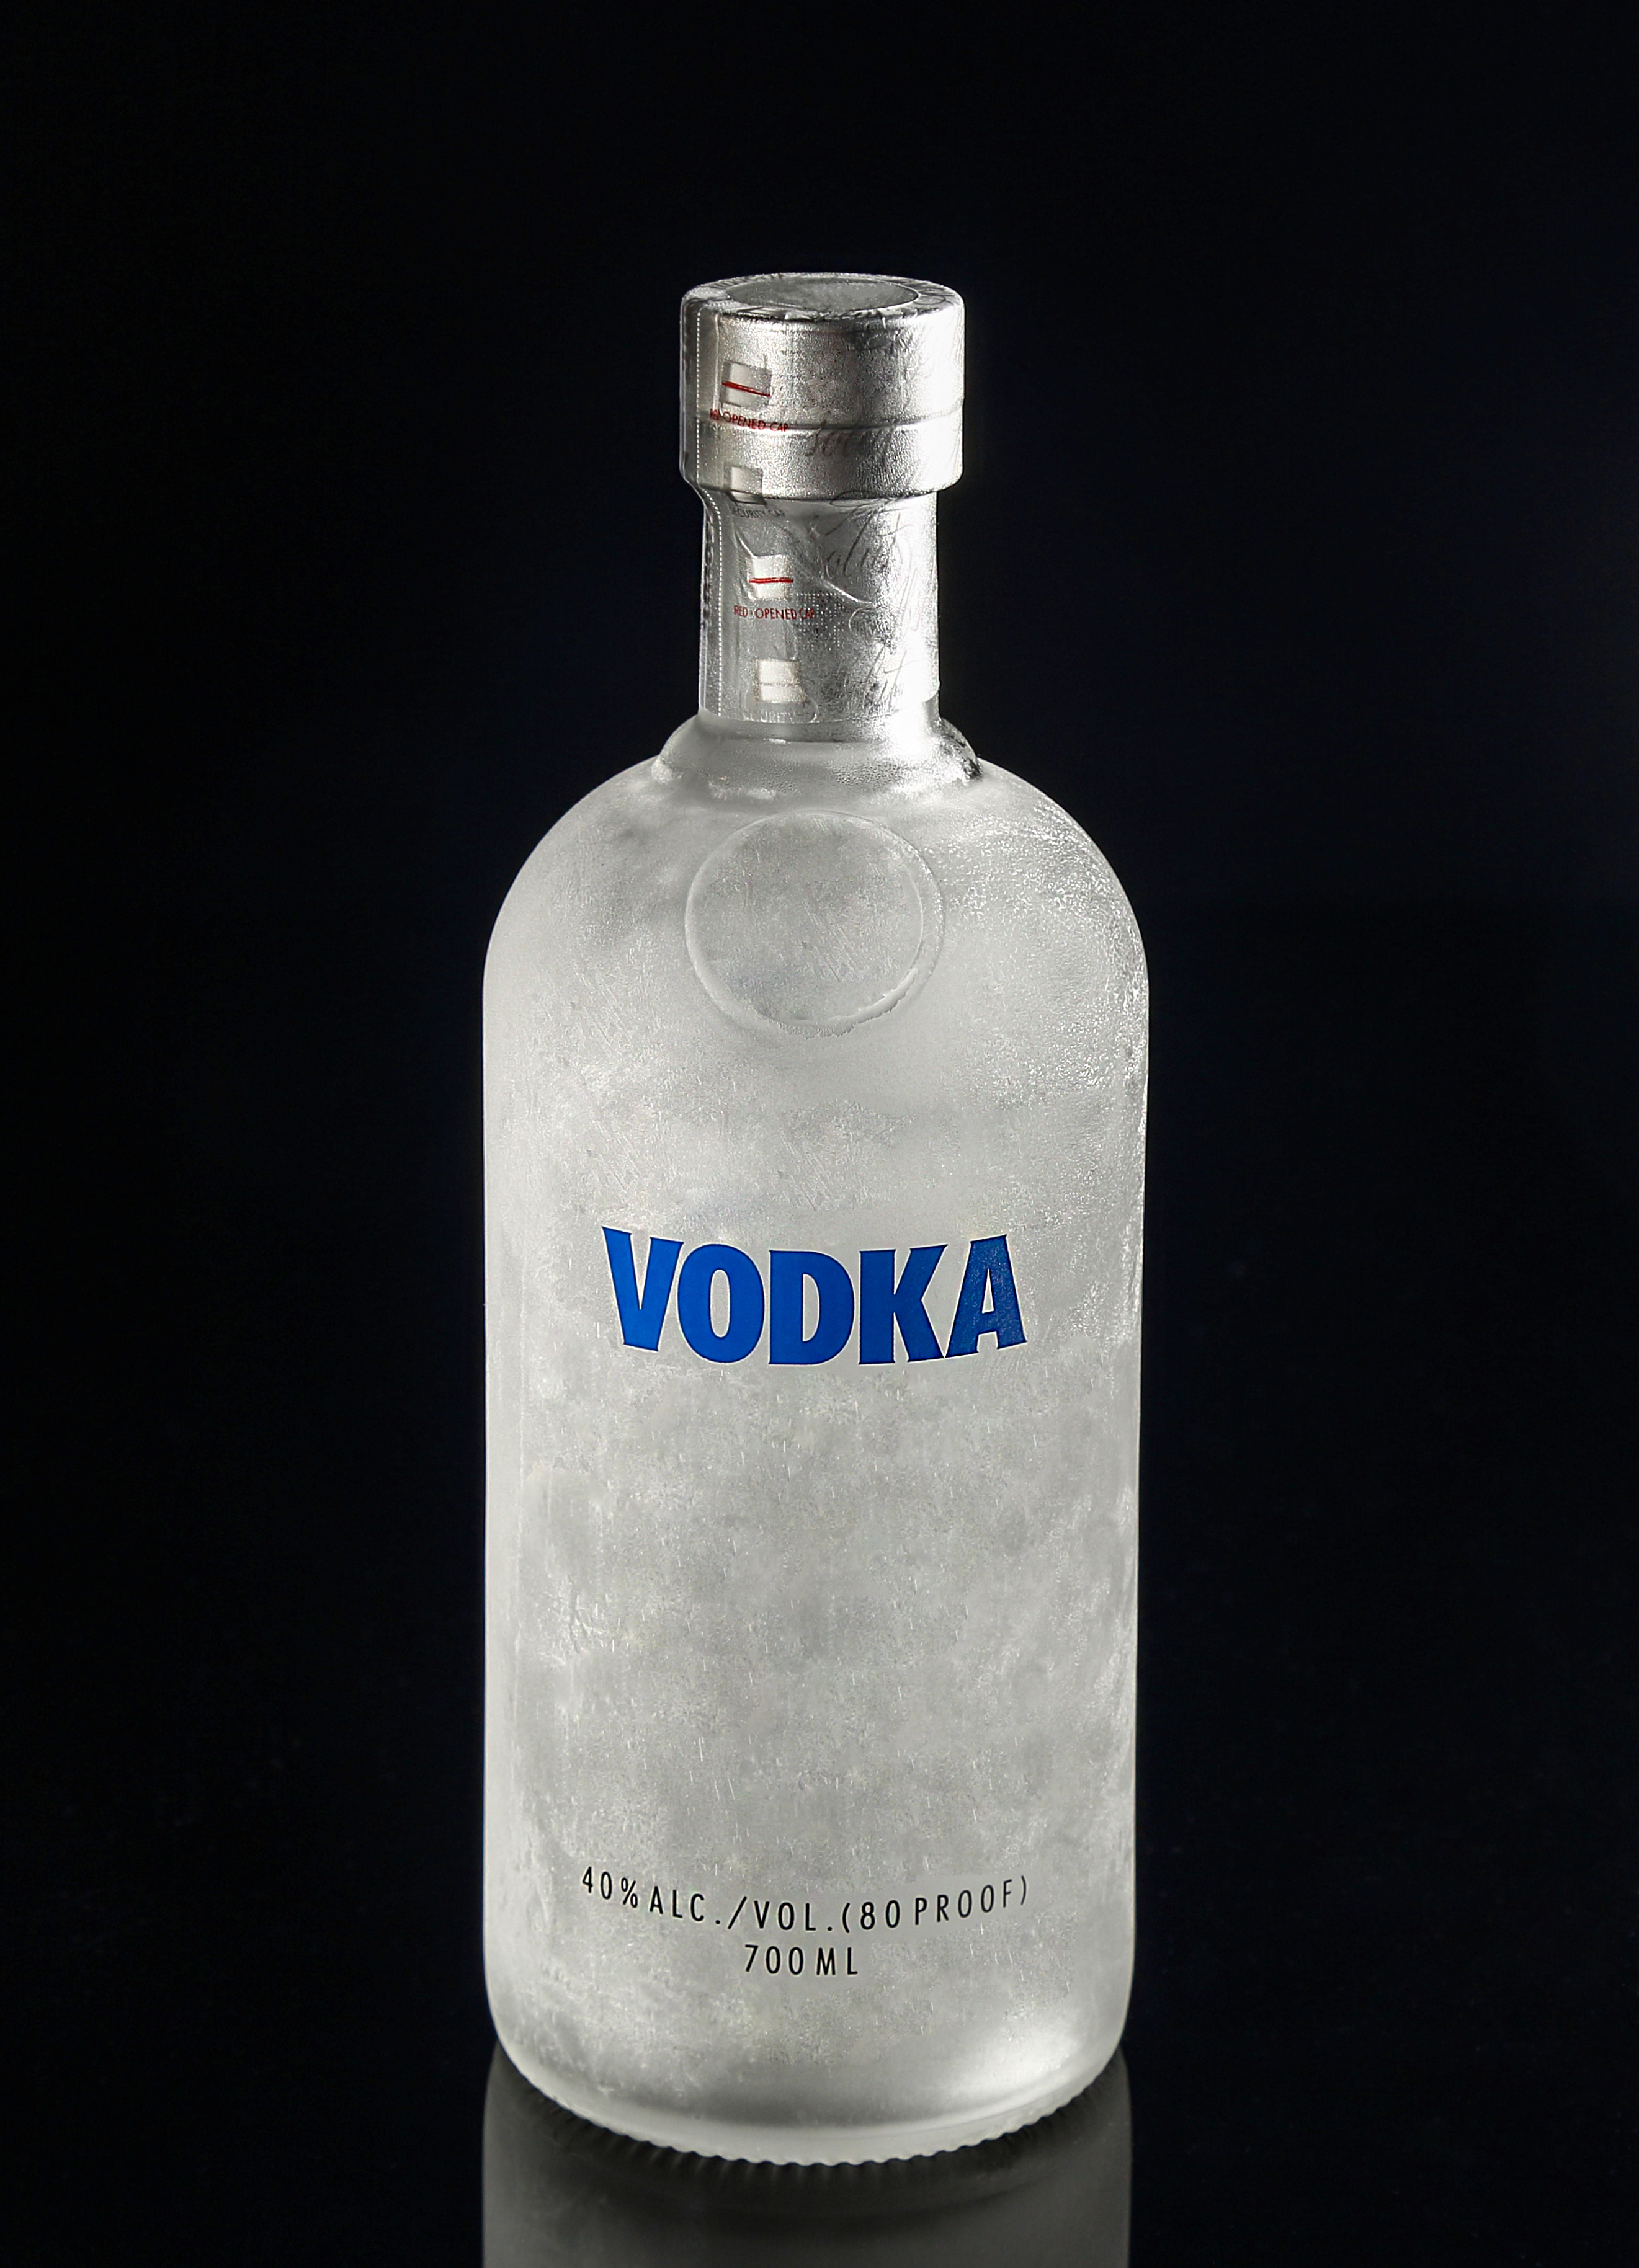 A bottle of vodka | Source: Shutterstock